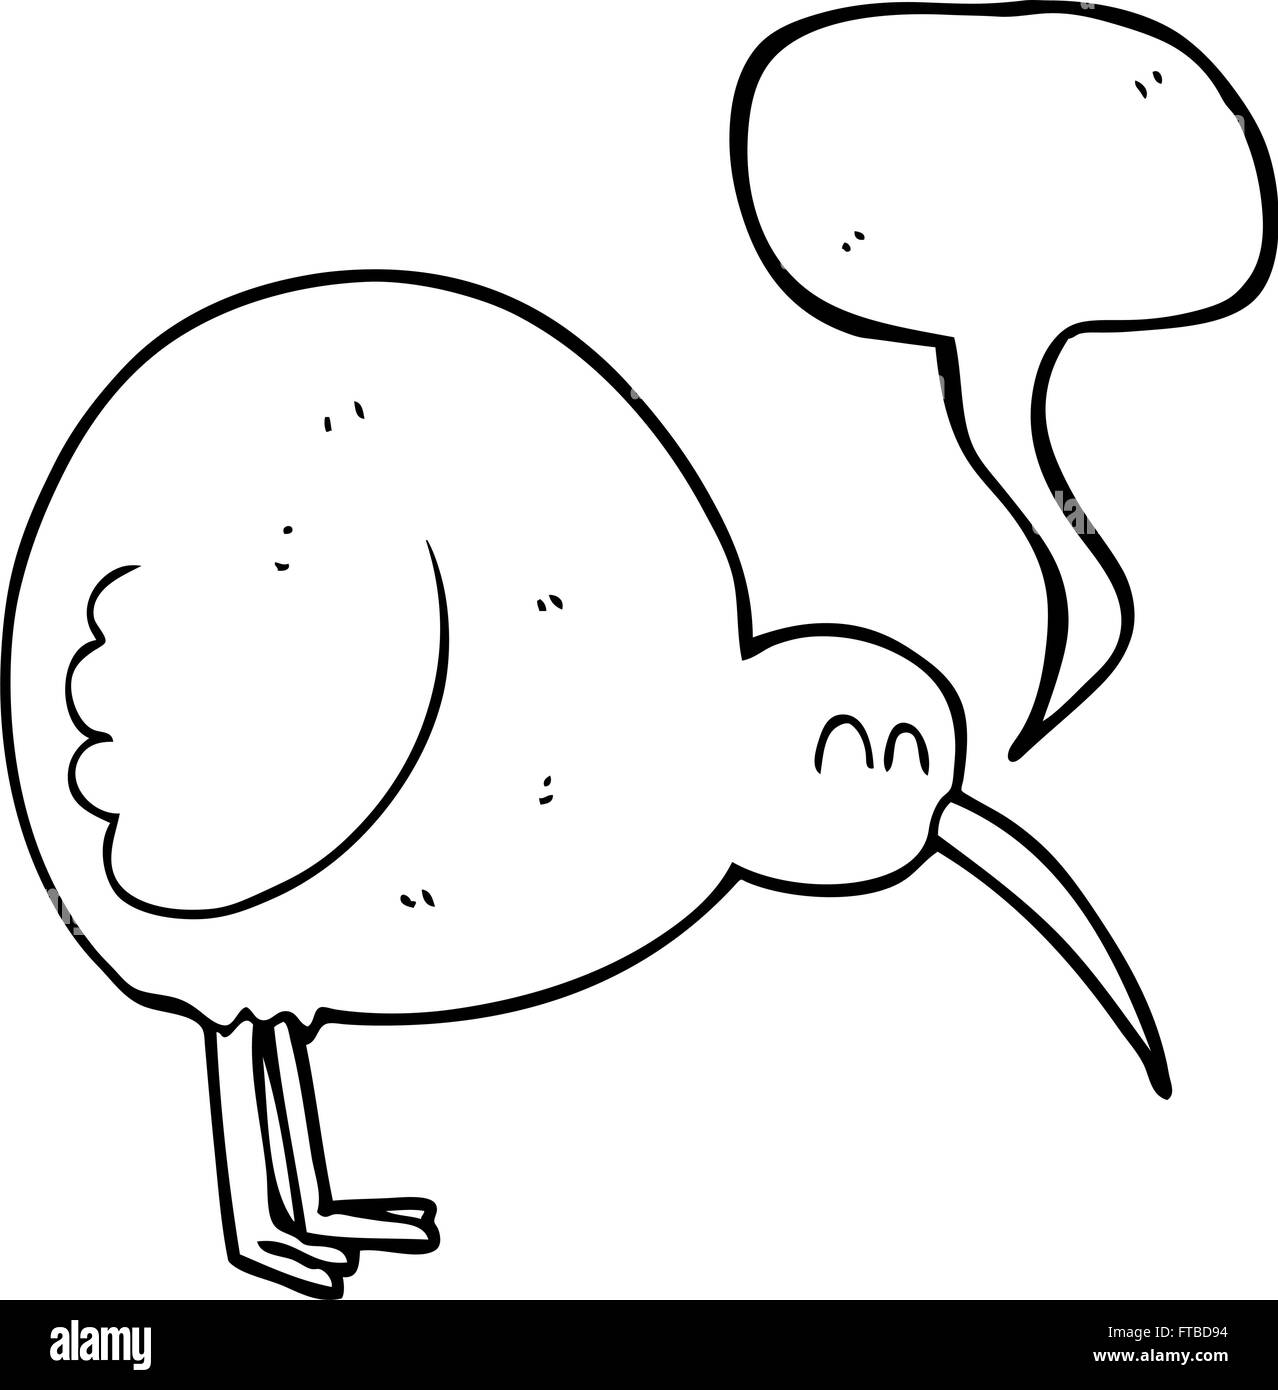 Freihändig gezeichnete Rede-Blase-Cartoon-Kiwi-Vogel Stock Vektor